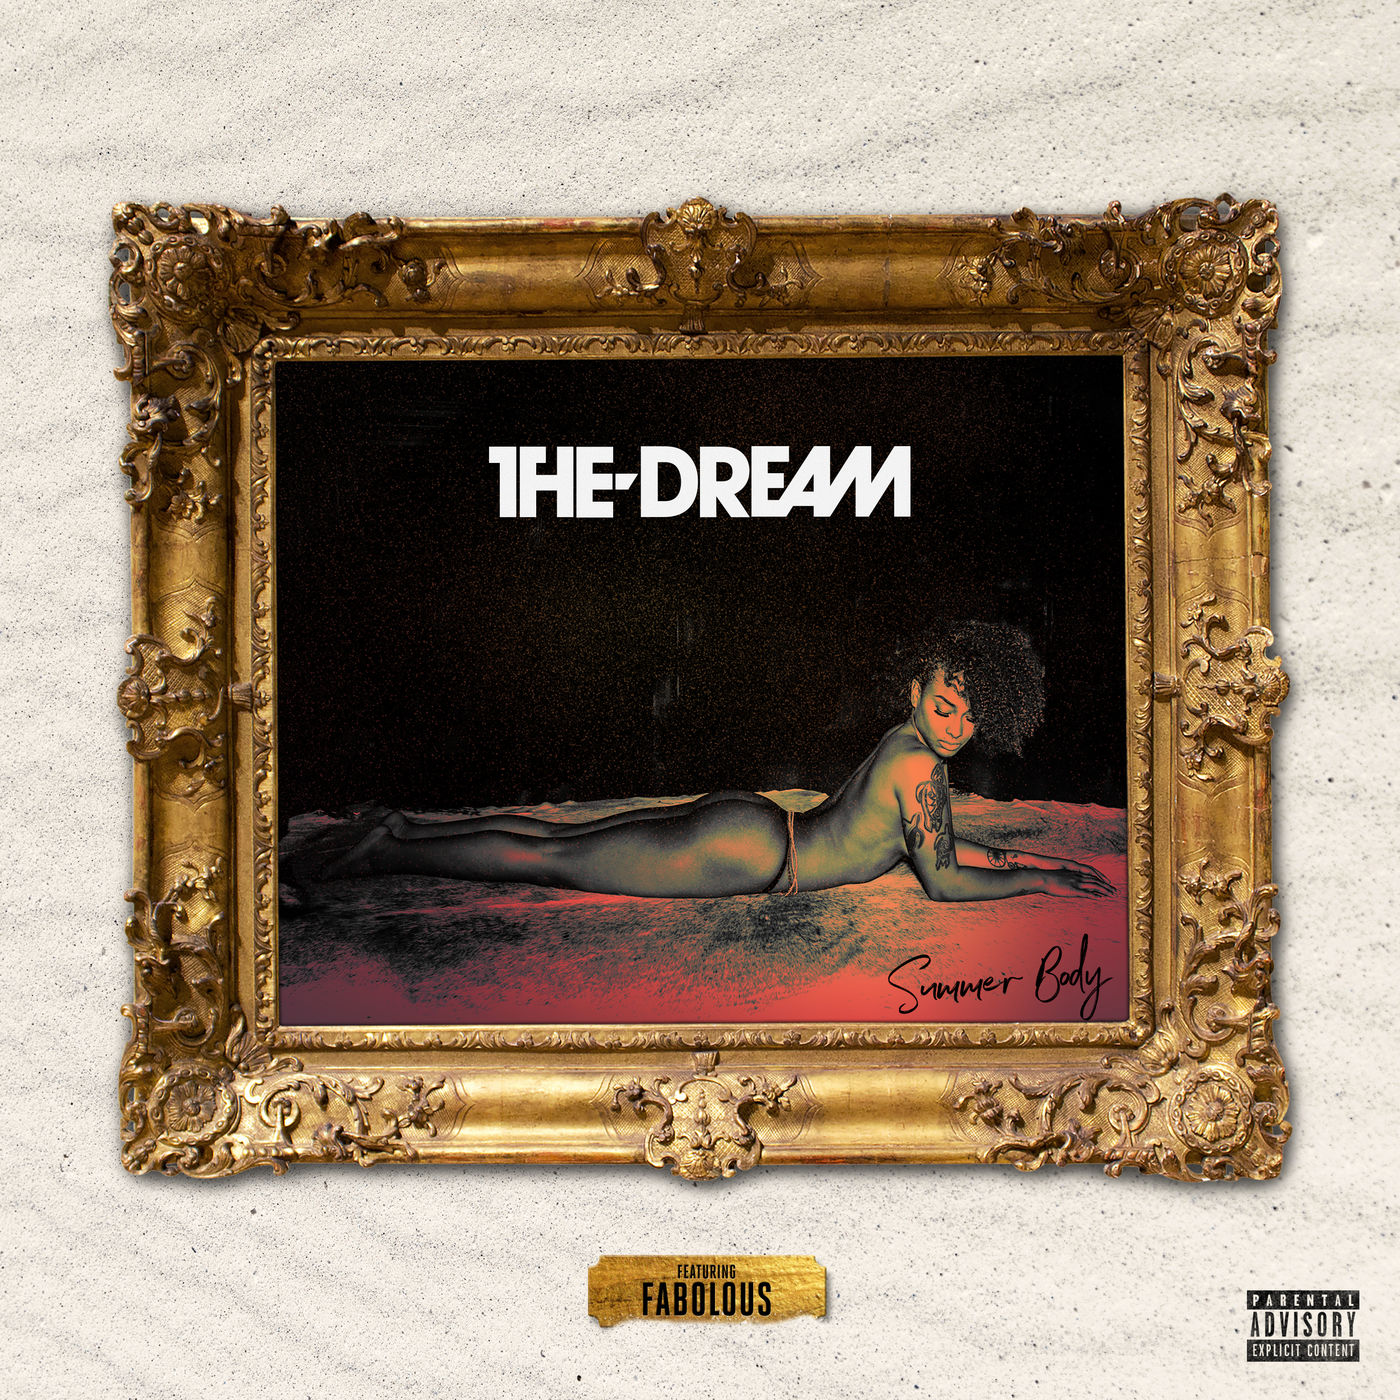 New Music: The-Dream – “Summer Body” Feat. Fabolous [LISTEN]